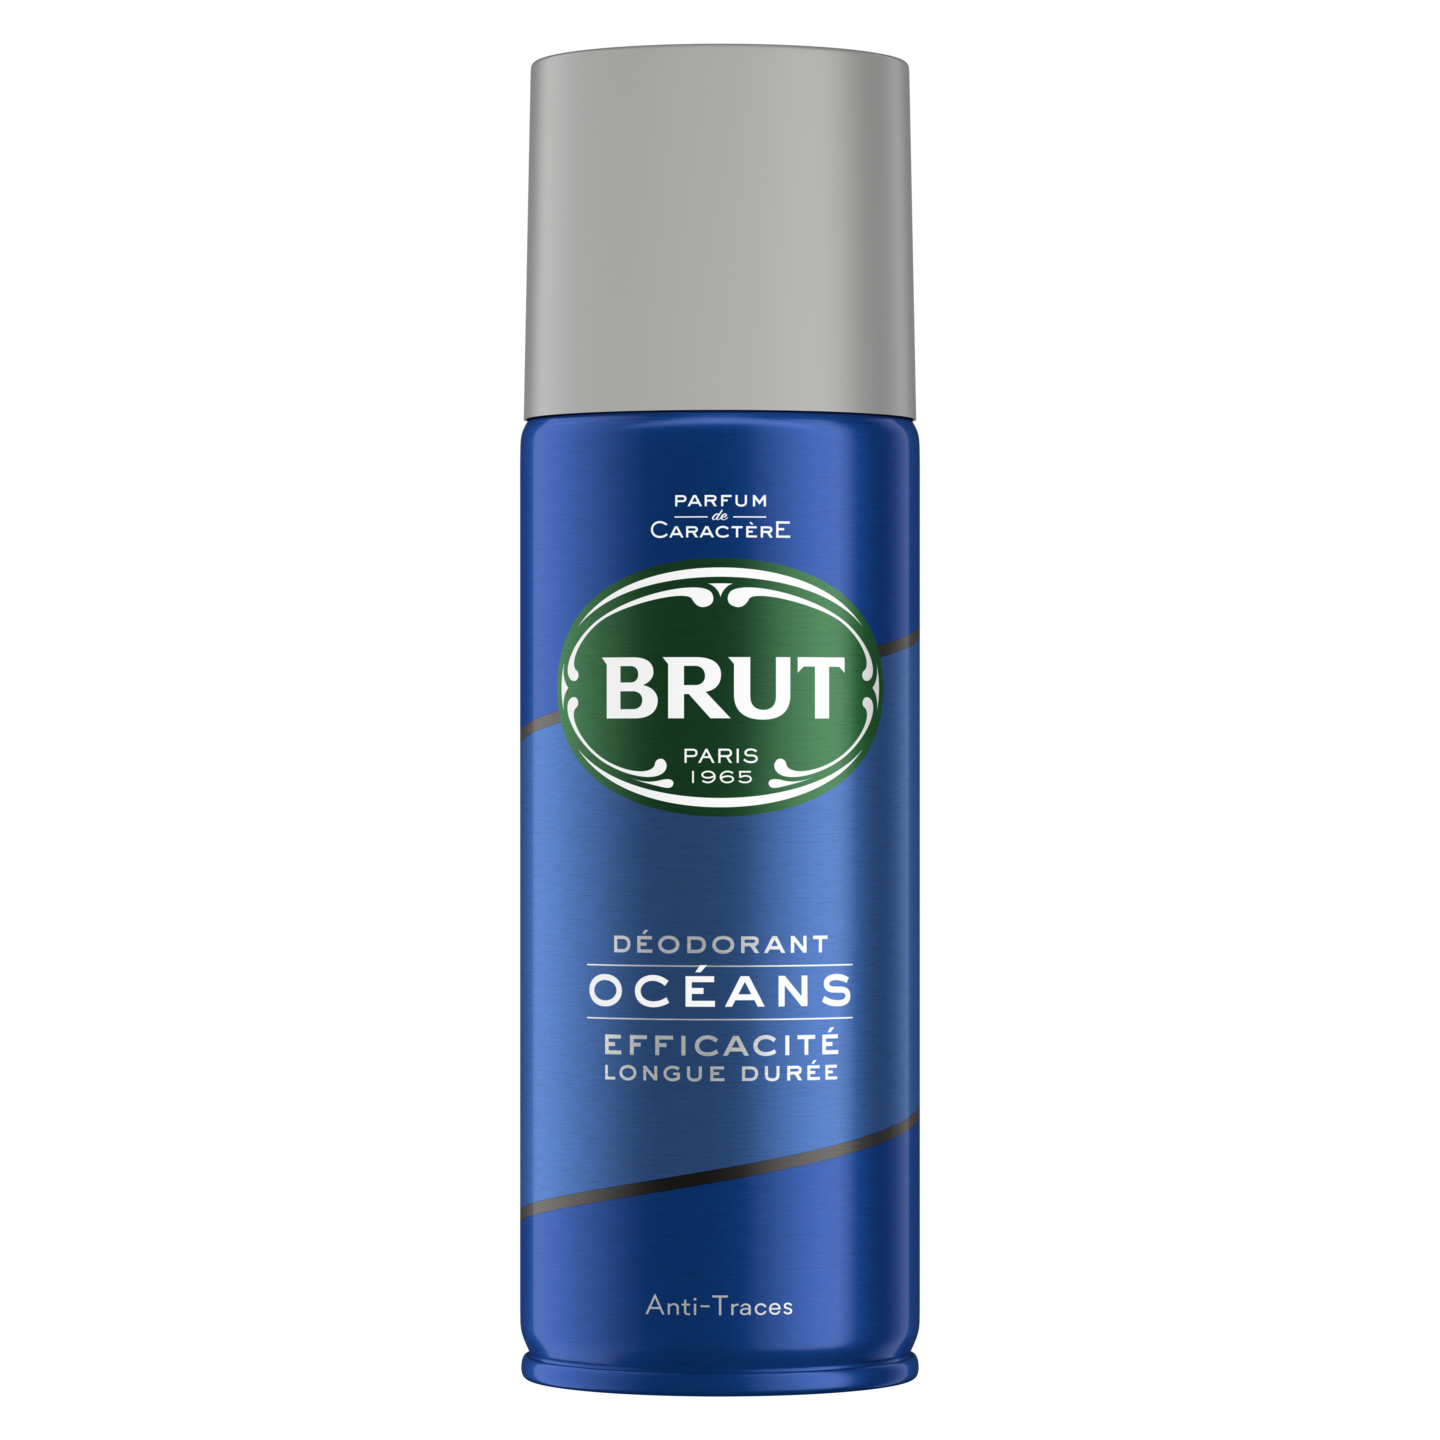 Brut deo spray 200ml oceans